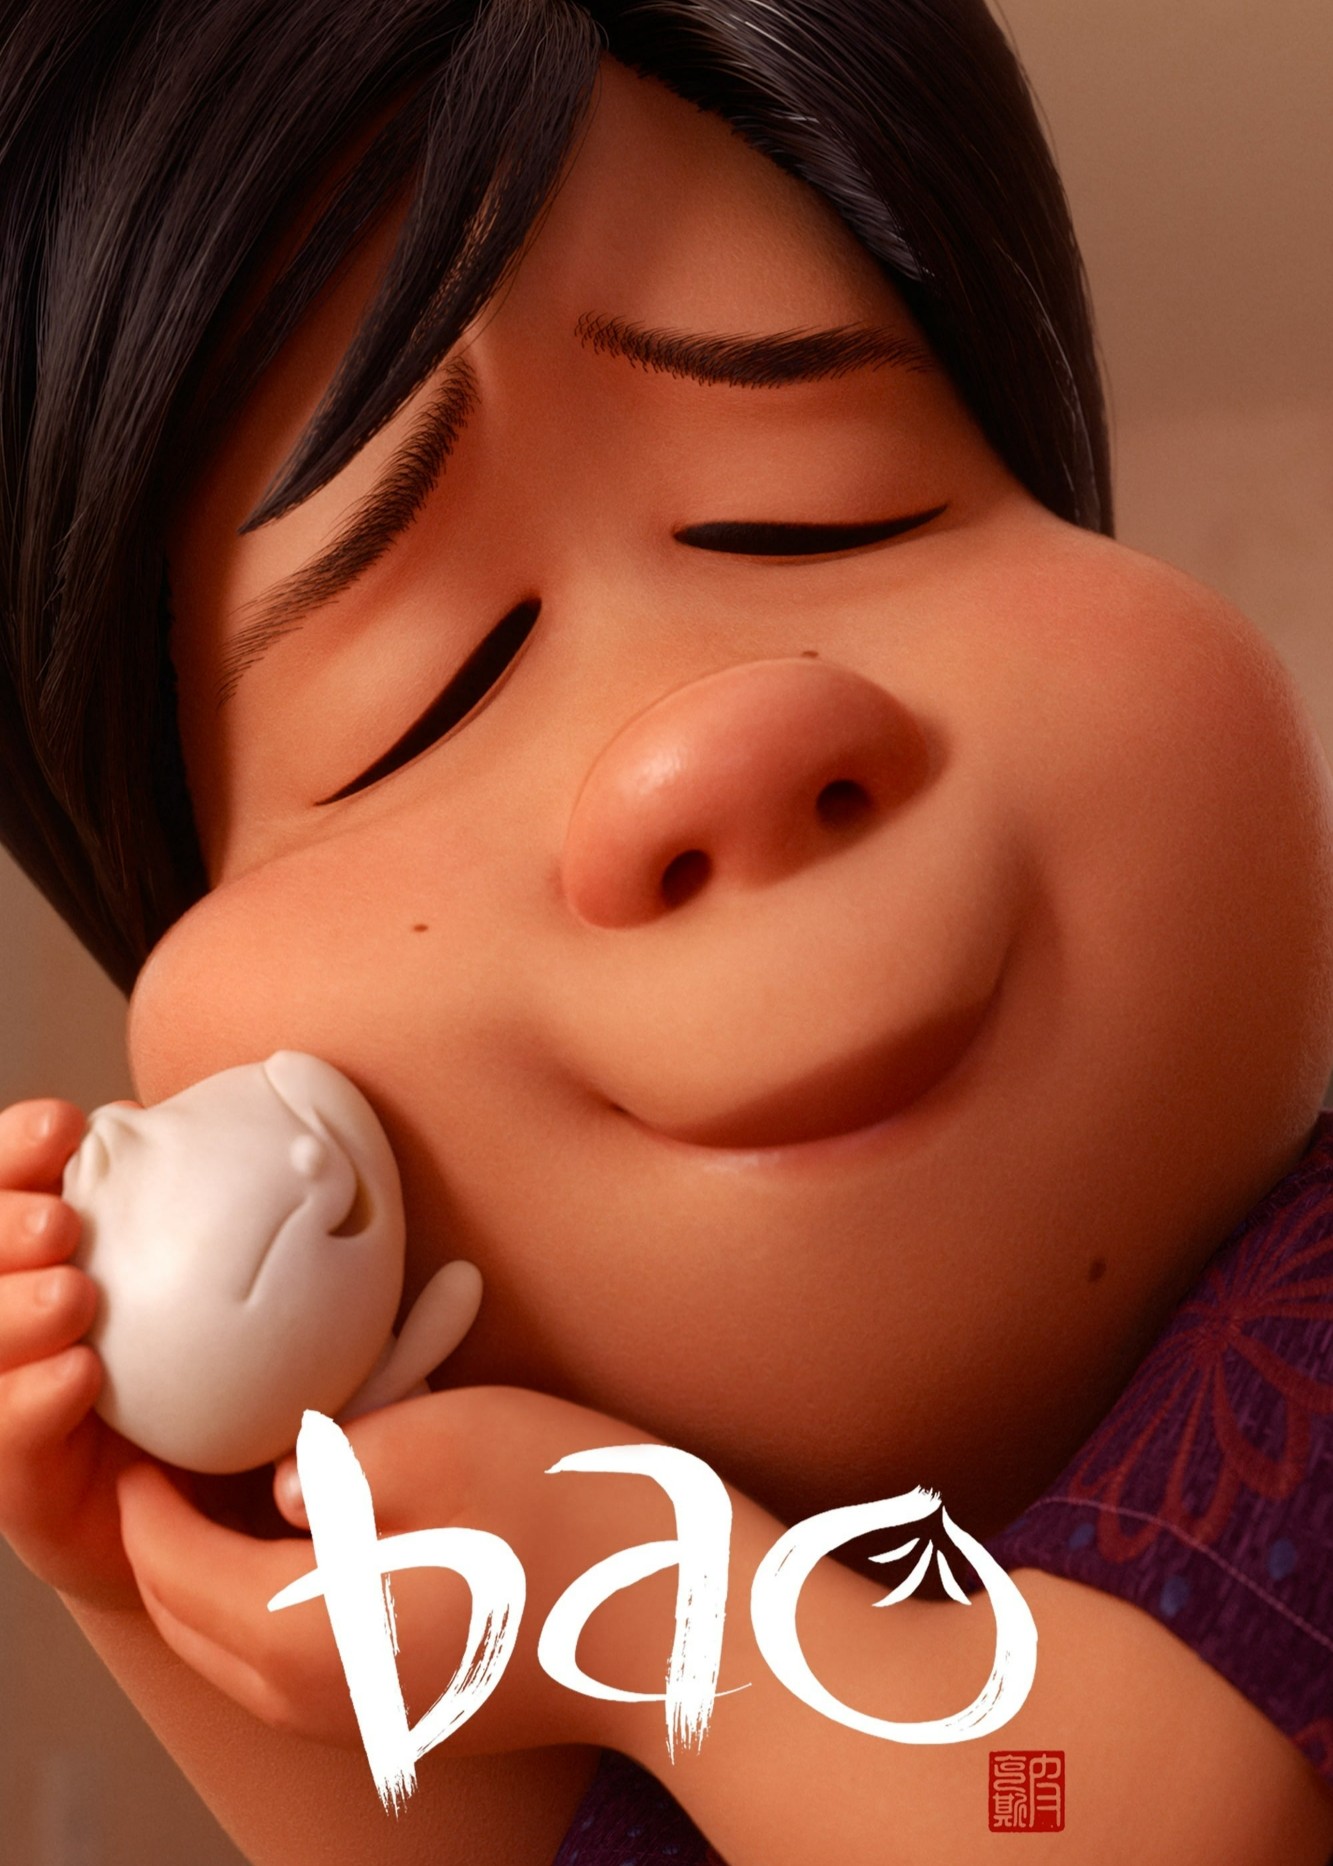 Bao - Bao (2018)